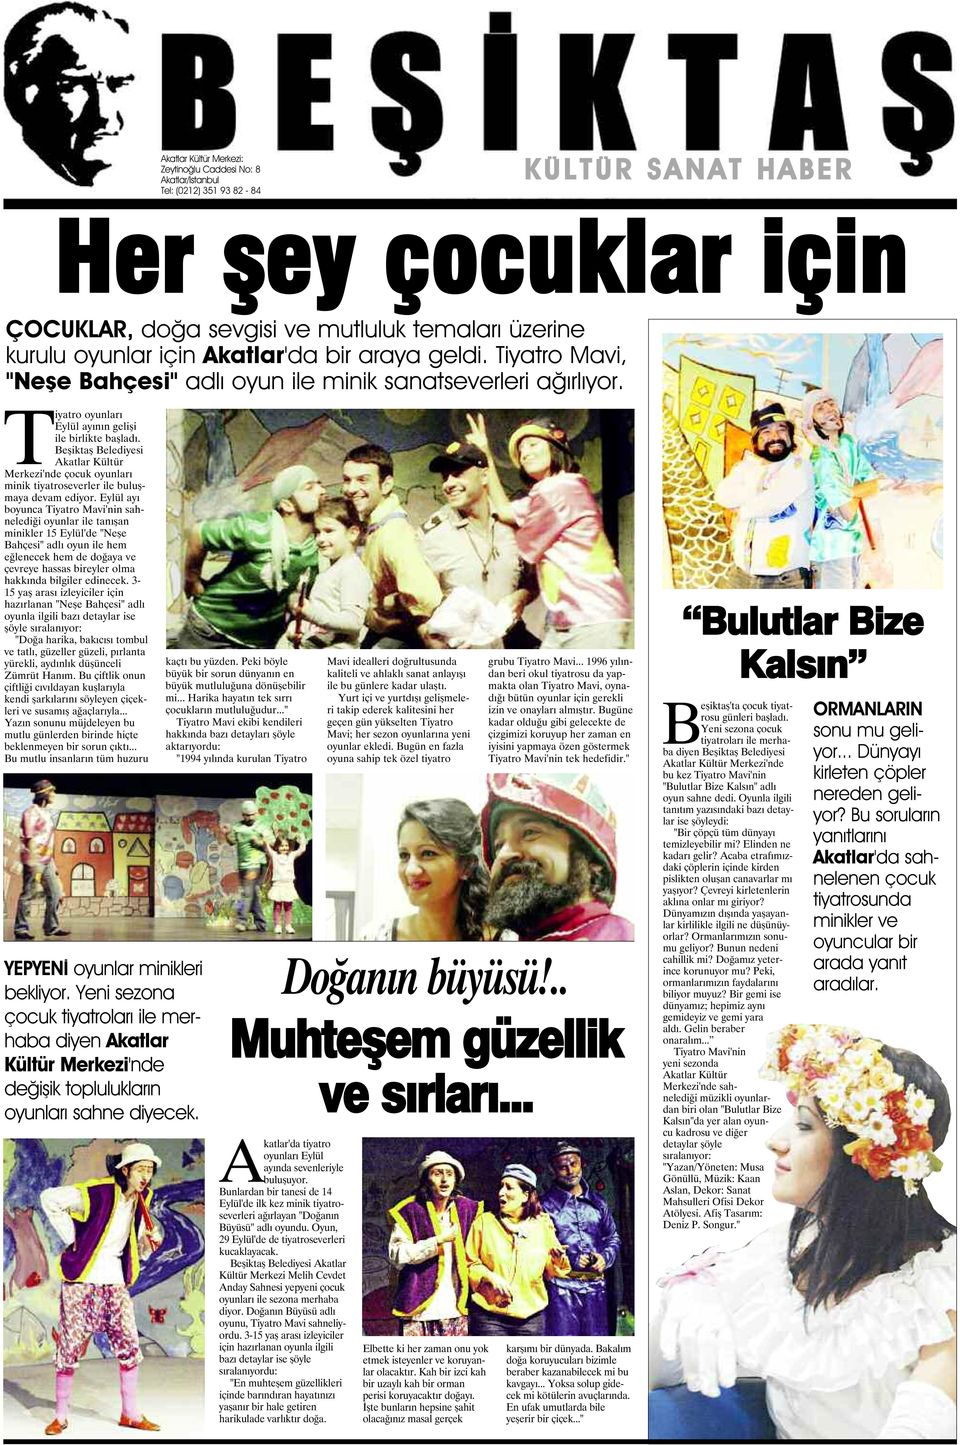 Beşiktaş Belediyesi Akatlar Kültür Merkezi'nde çocuk oyunları minik tiyatroseverler ile buluşmaya devam ediyor.